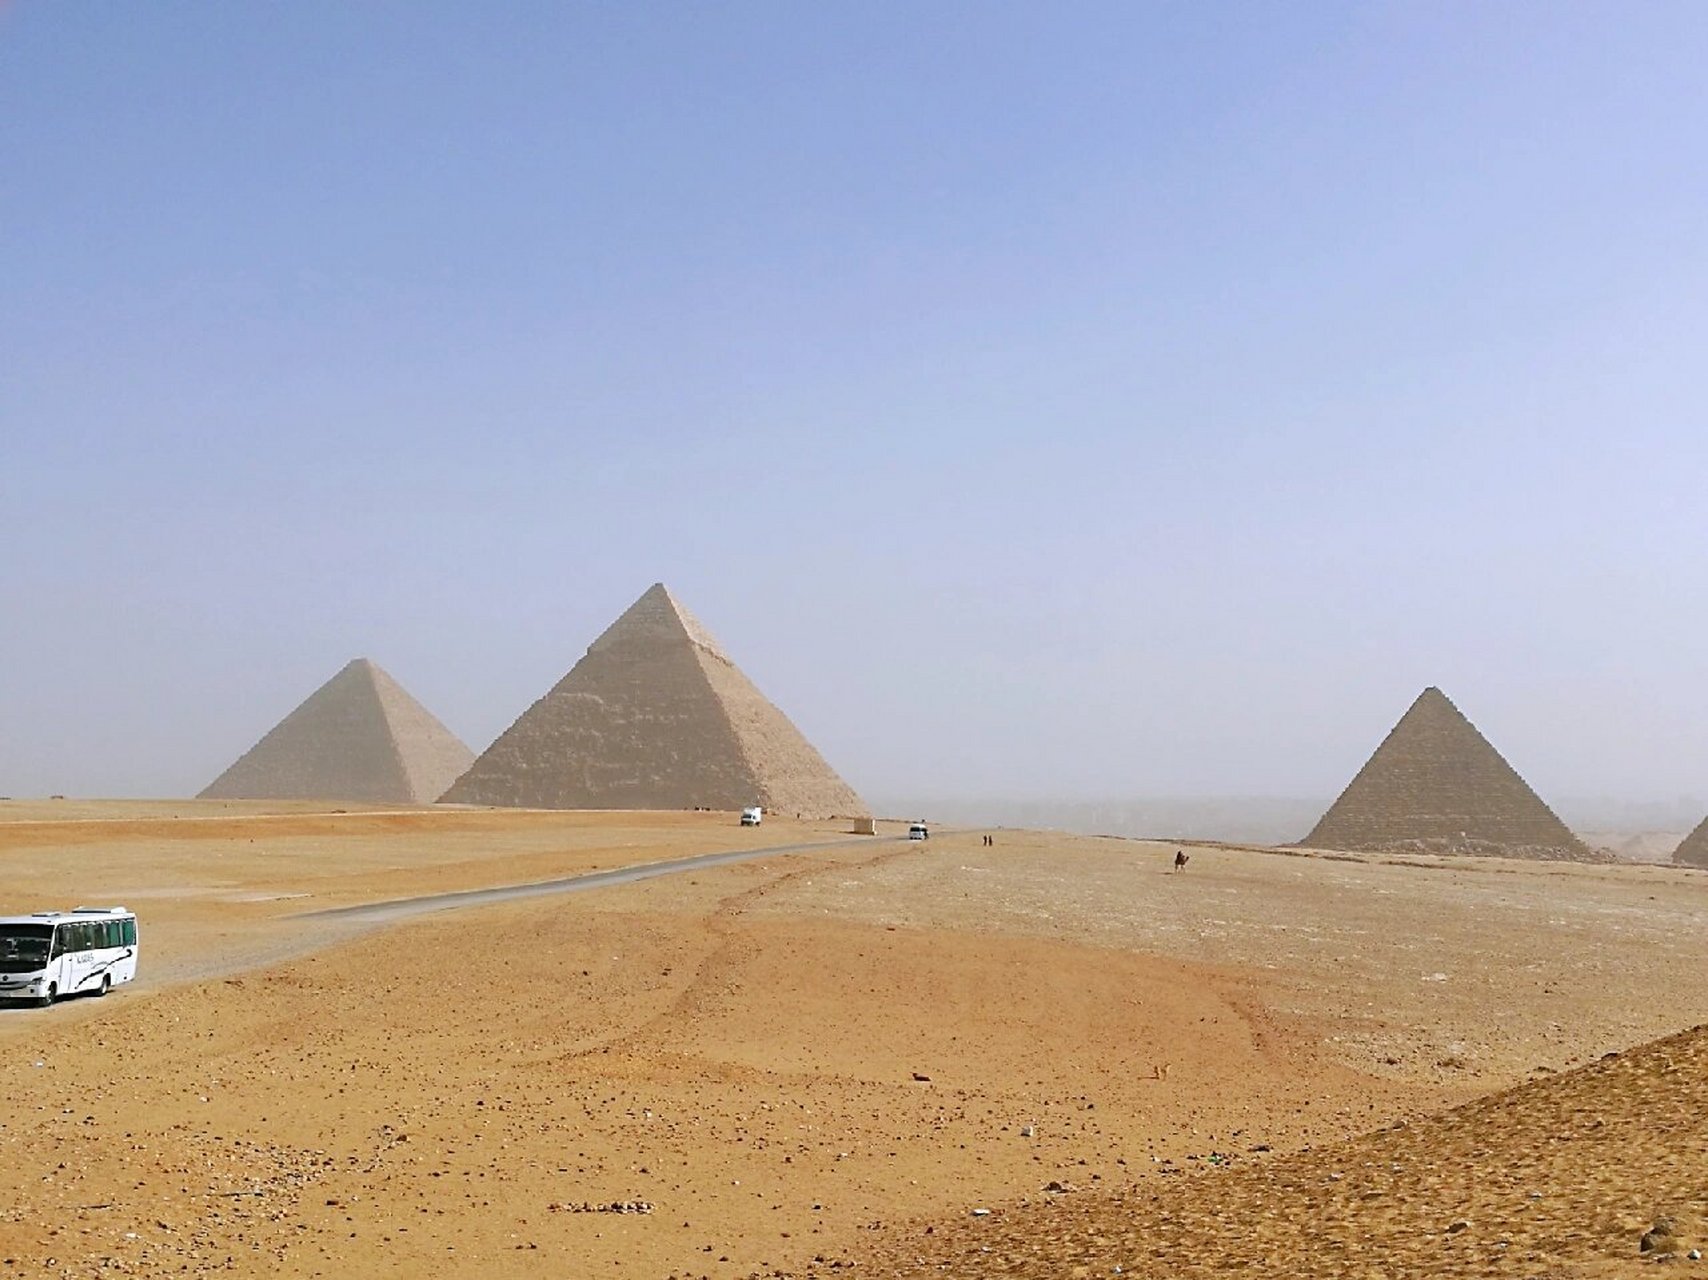 胡夫金字塔,是埃及金字塔最突出的一个,高146